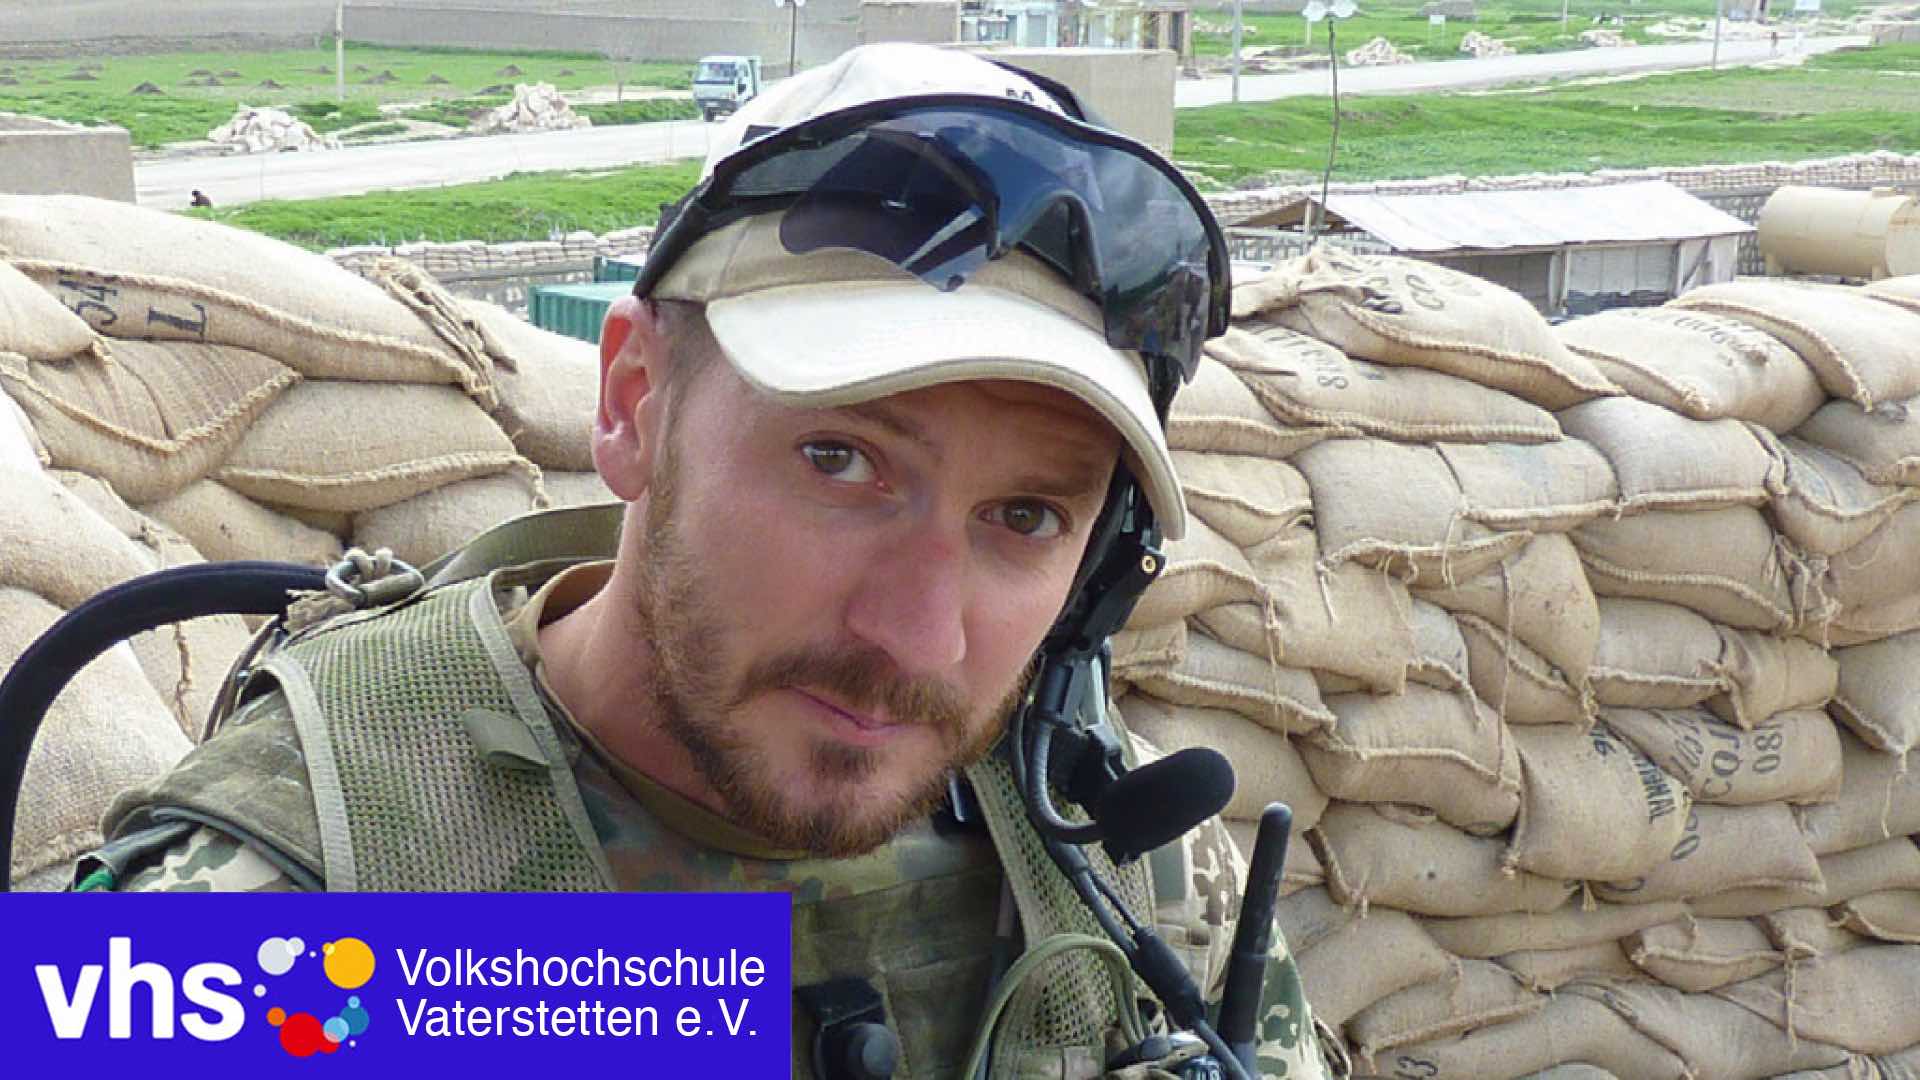 vhs-Vortrag; "Hier ist Krieg" - Afghanistaneinsatz eines Bundeswehrsoldaten